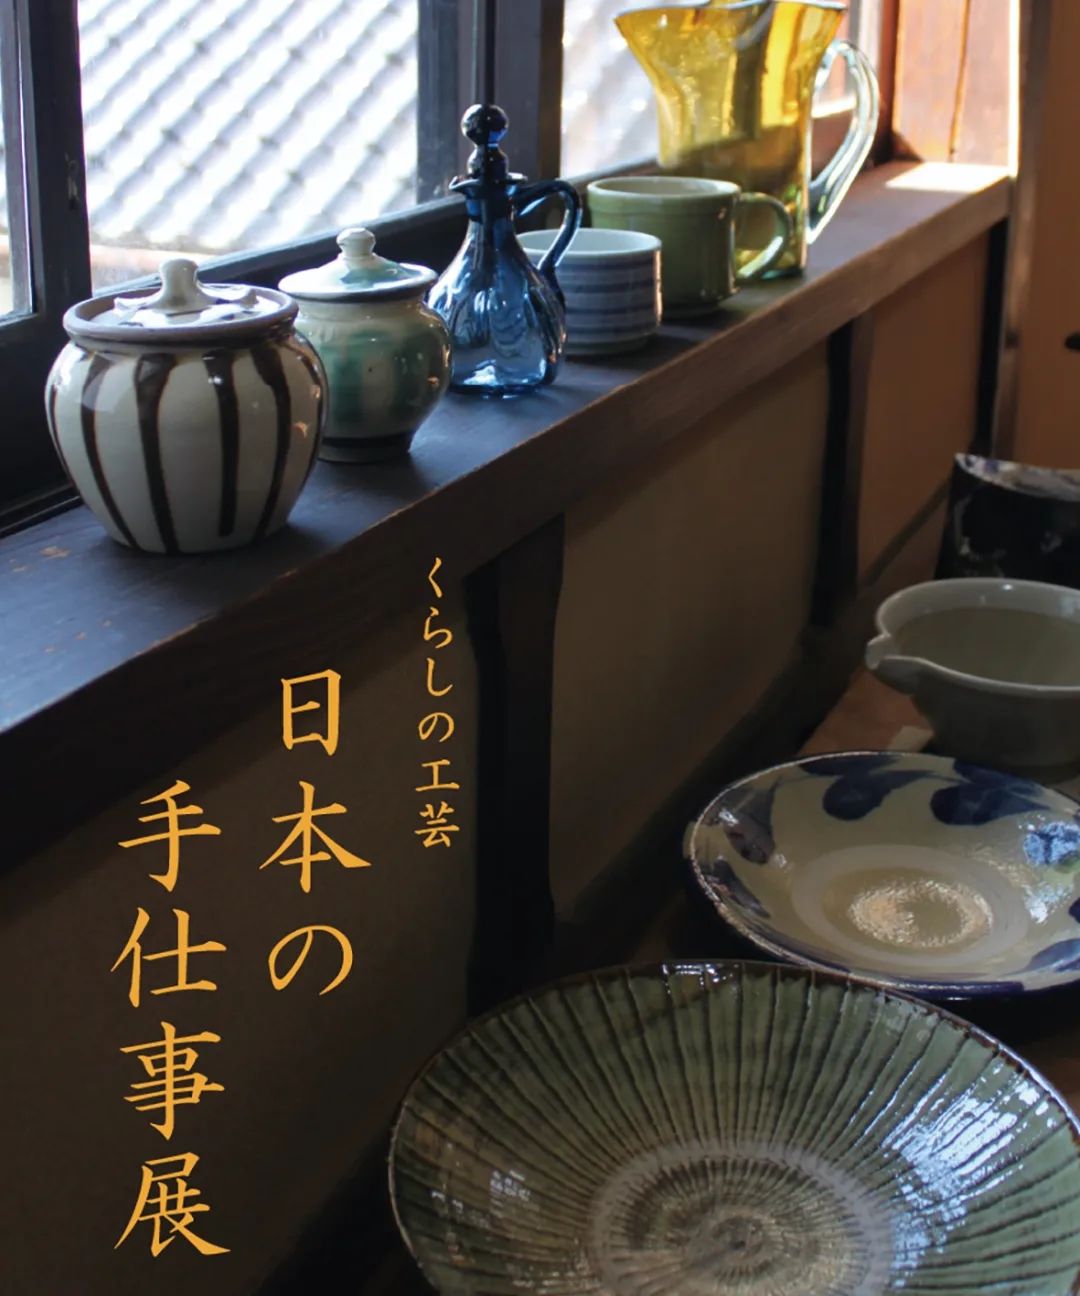 日本の手仕事展毎年、ご好評をいただいております「日本の手仕事展」が今年も開催されます。場所、日程は以下の通りです。　場所-桂樹舎和紙文庫　日時-/11月24日(金)から26日(月)　　　　 10時～17時　　　　　(最終日は16時まで)日本各地で作られている陶磁器や硝子、染織物などが並びます。#手仕事#桂樹舎和紙文庫 #陶磁器#硝子#染織物#手仕事フォーラム#民芸